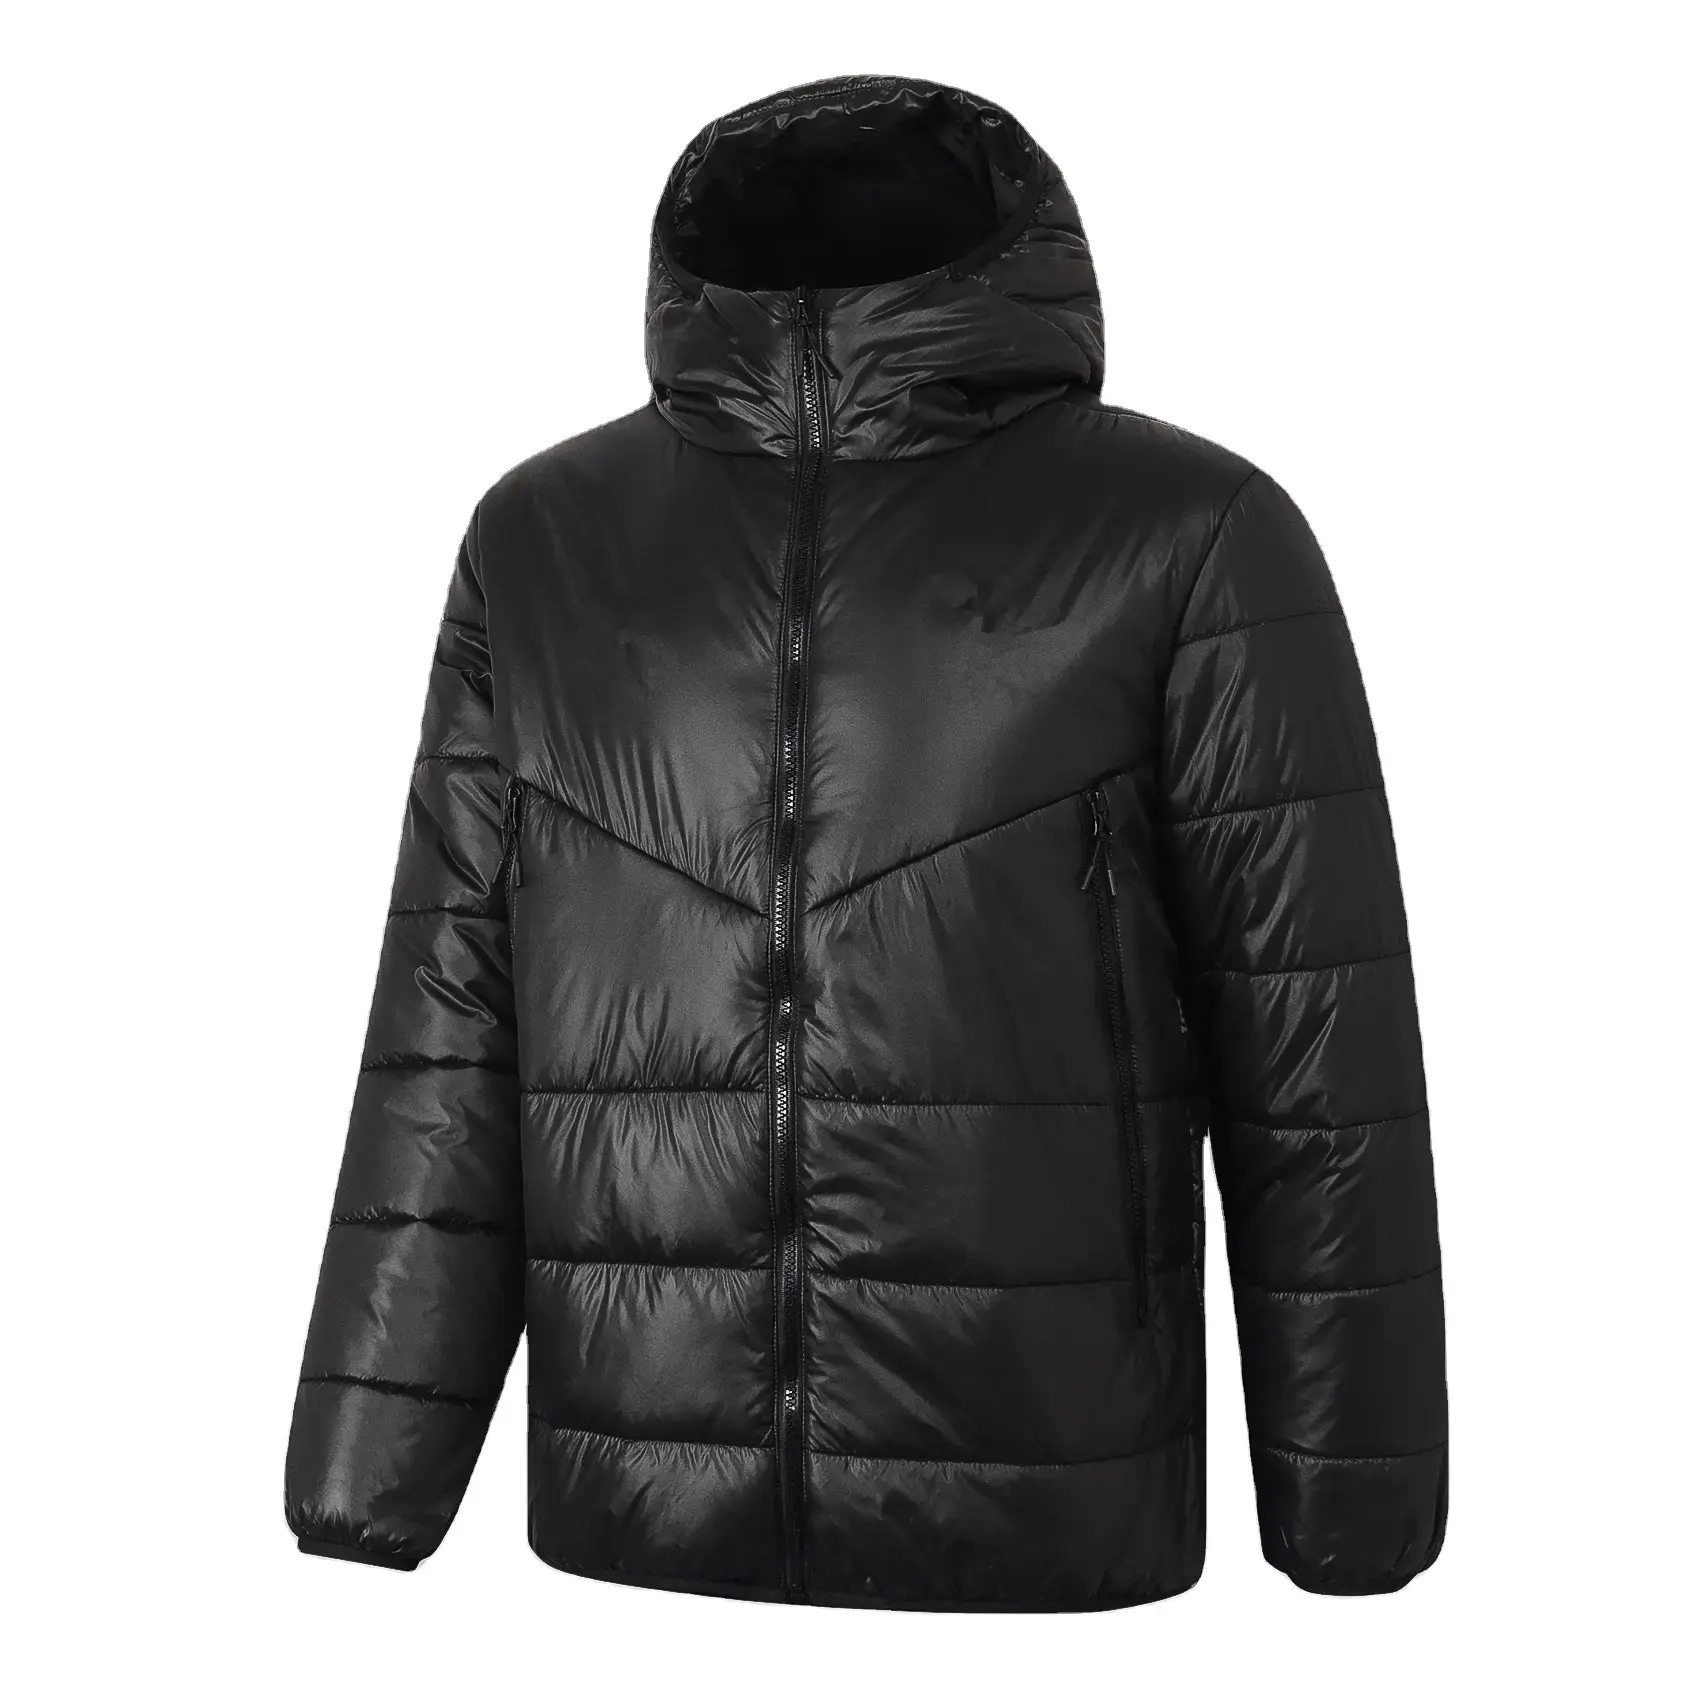 उच्च गुणवत्ता वाले पुरुषों के हुड वाले विंडब्रेकर मोटे वार्म डाउन पफर टीम यूनिफ़ॉर्म कोट सॉकर लॉन्ग जैकेट विंटर कोट पहनें